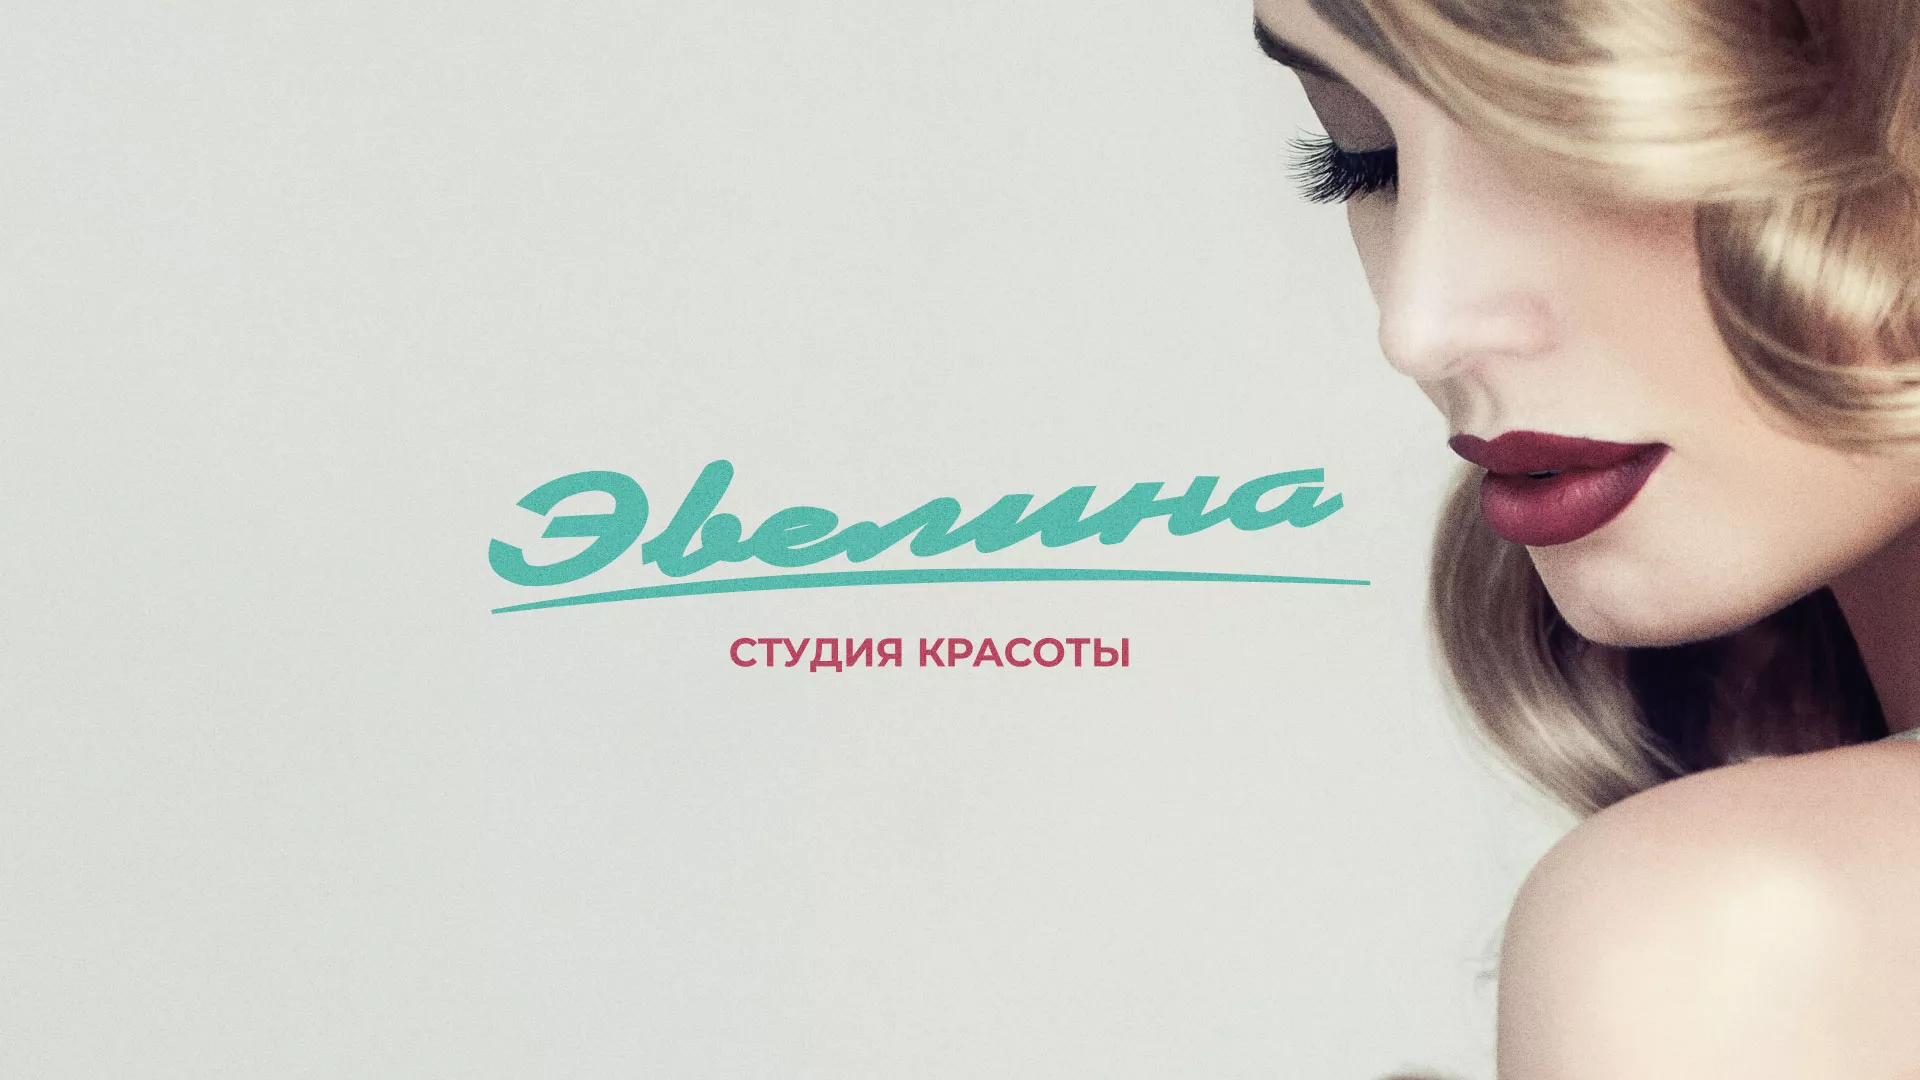 Разработка сайта для салона красоты «Эвелина» в Александровске